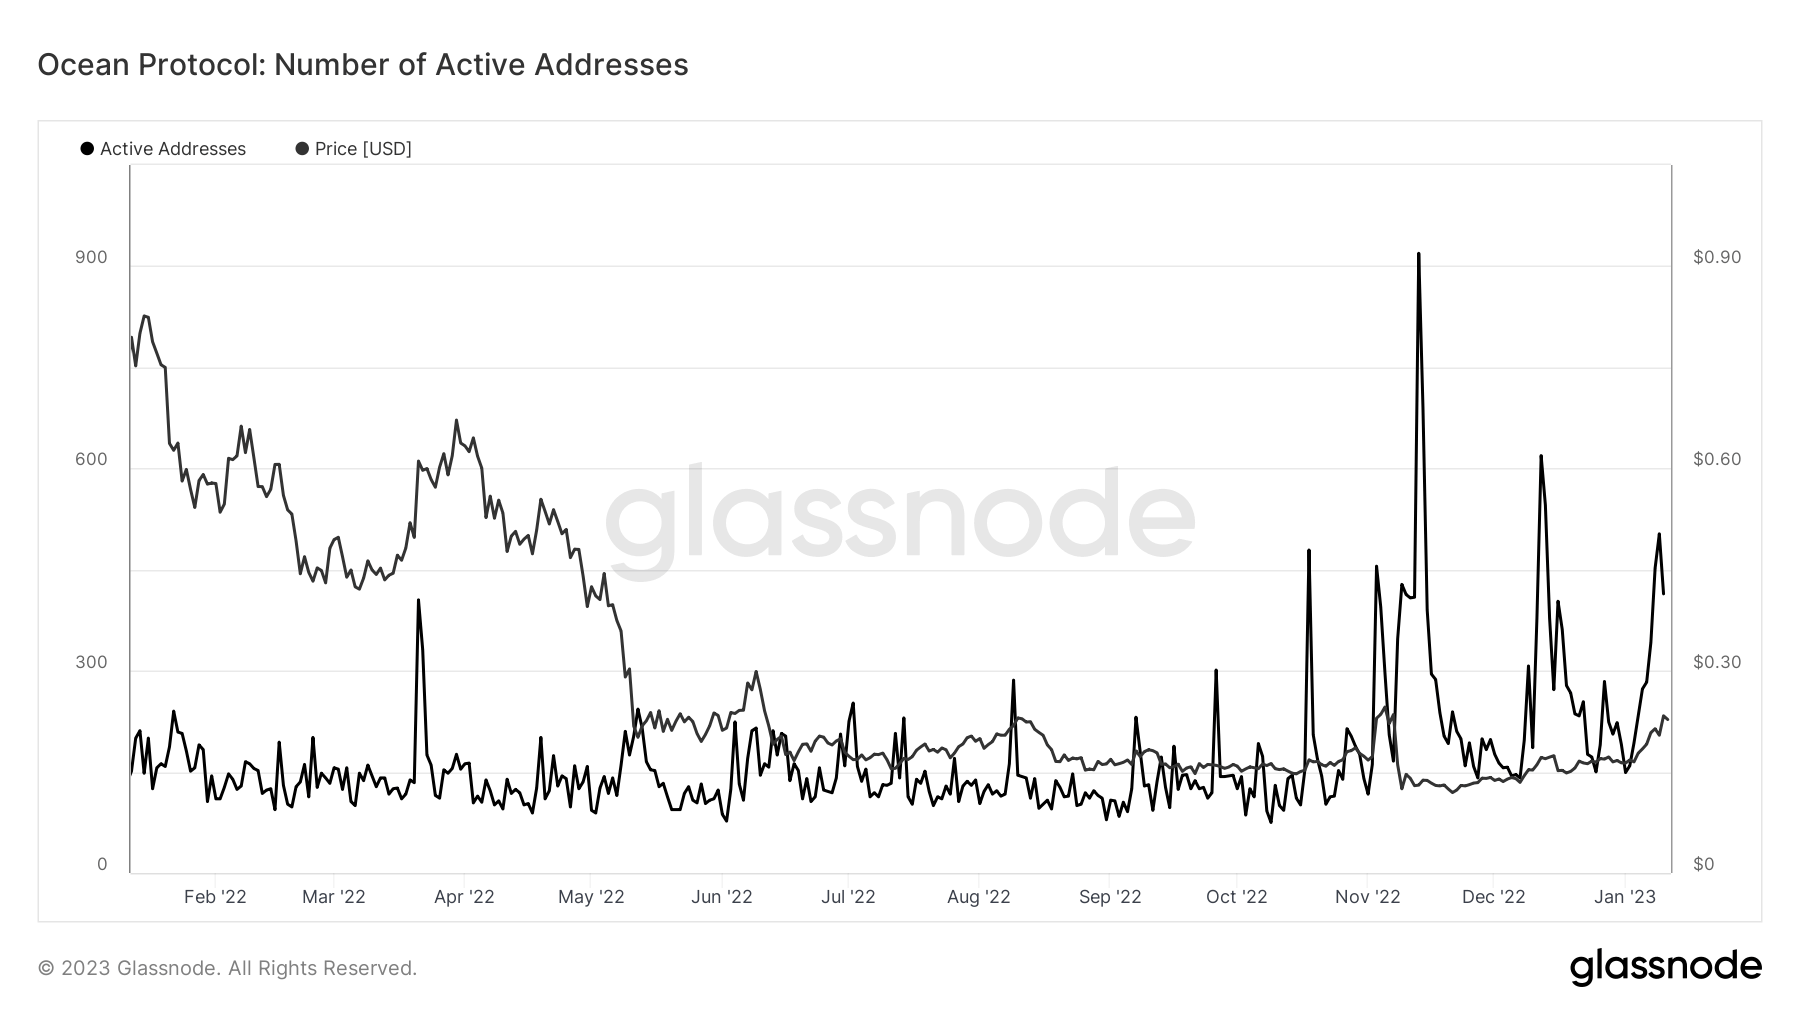 Ocean Protocol: Number of active addresses (Source: Glassnode.com)